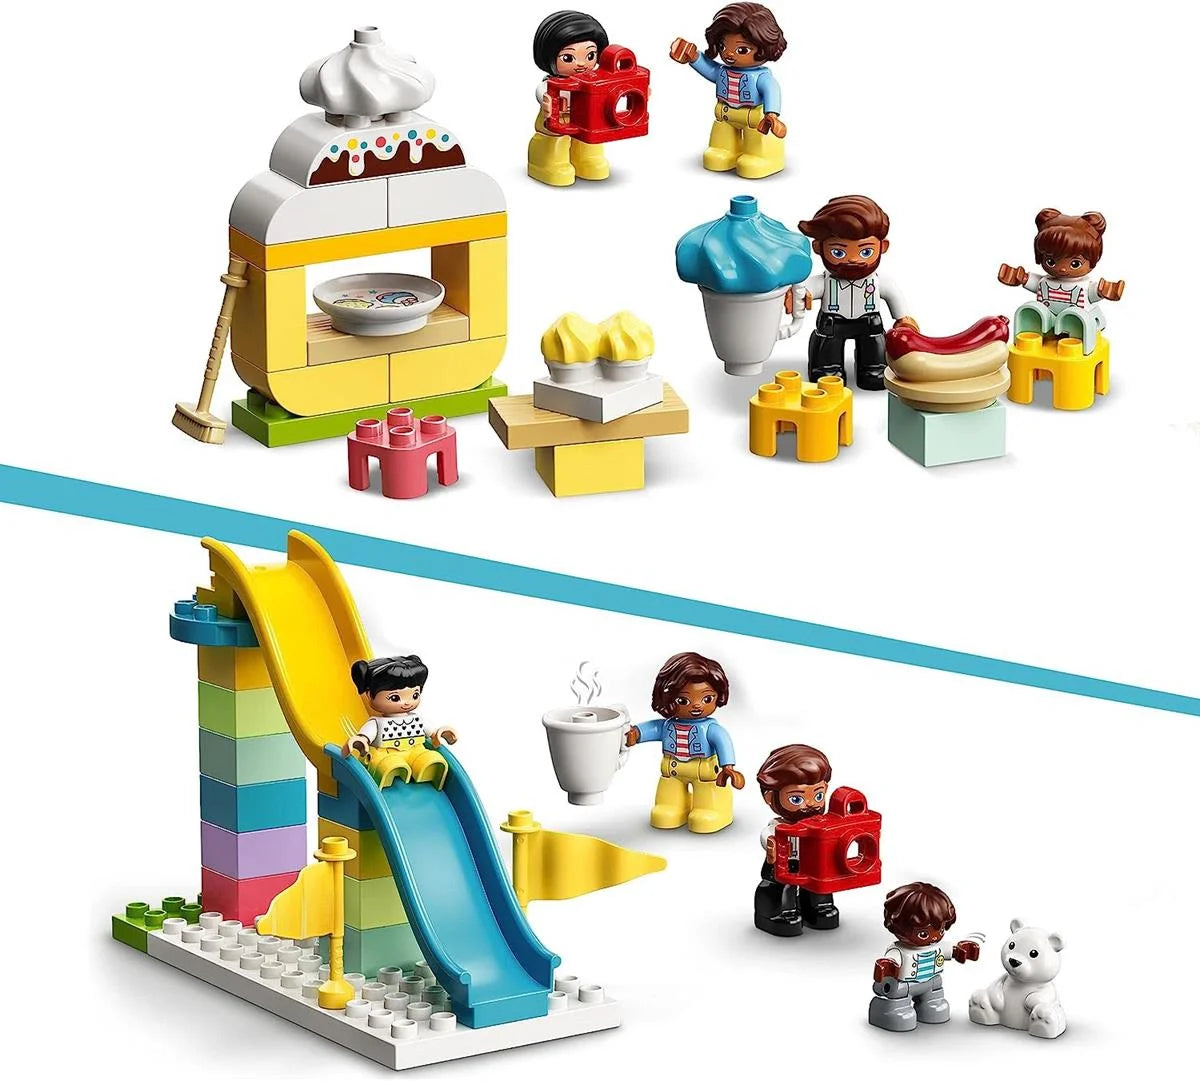 Lego Duplo Town Lunapark 10956 | Toysall